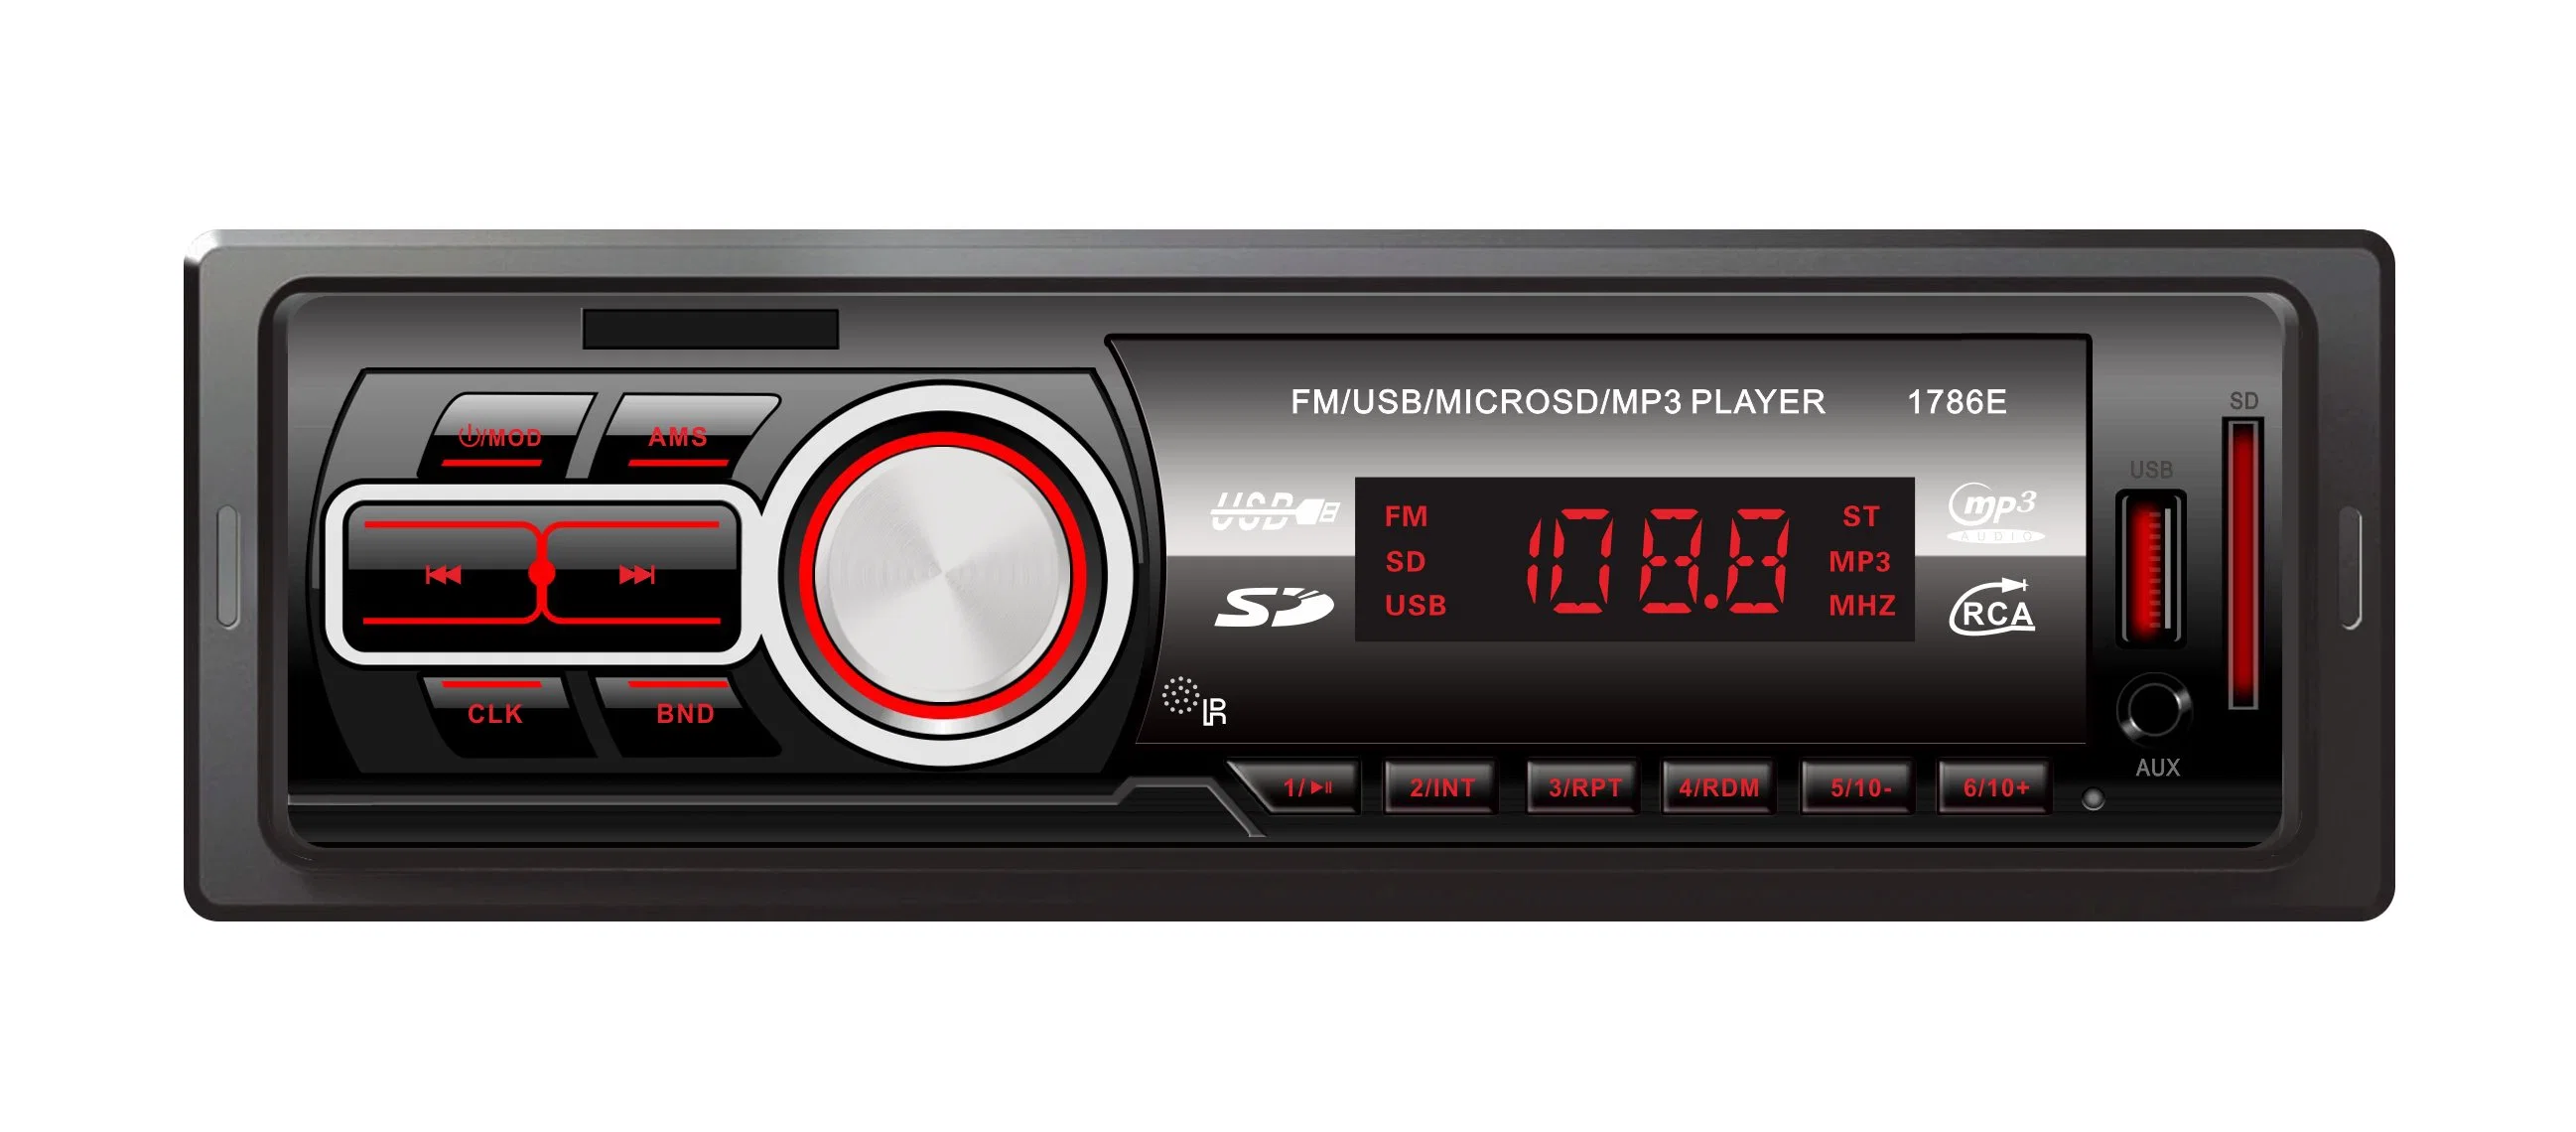 Electronics Digital Media Receiver lecteur mp3 audio de voiture